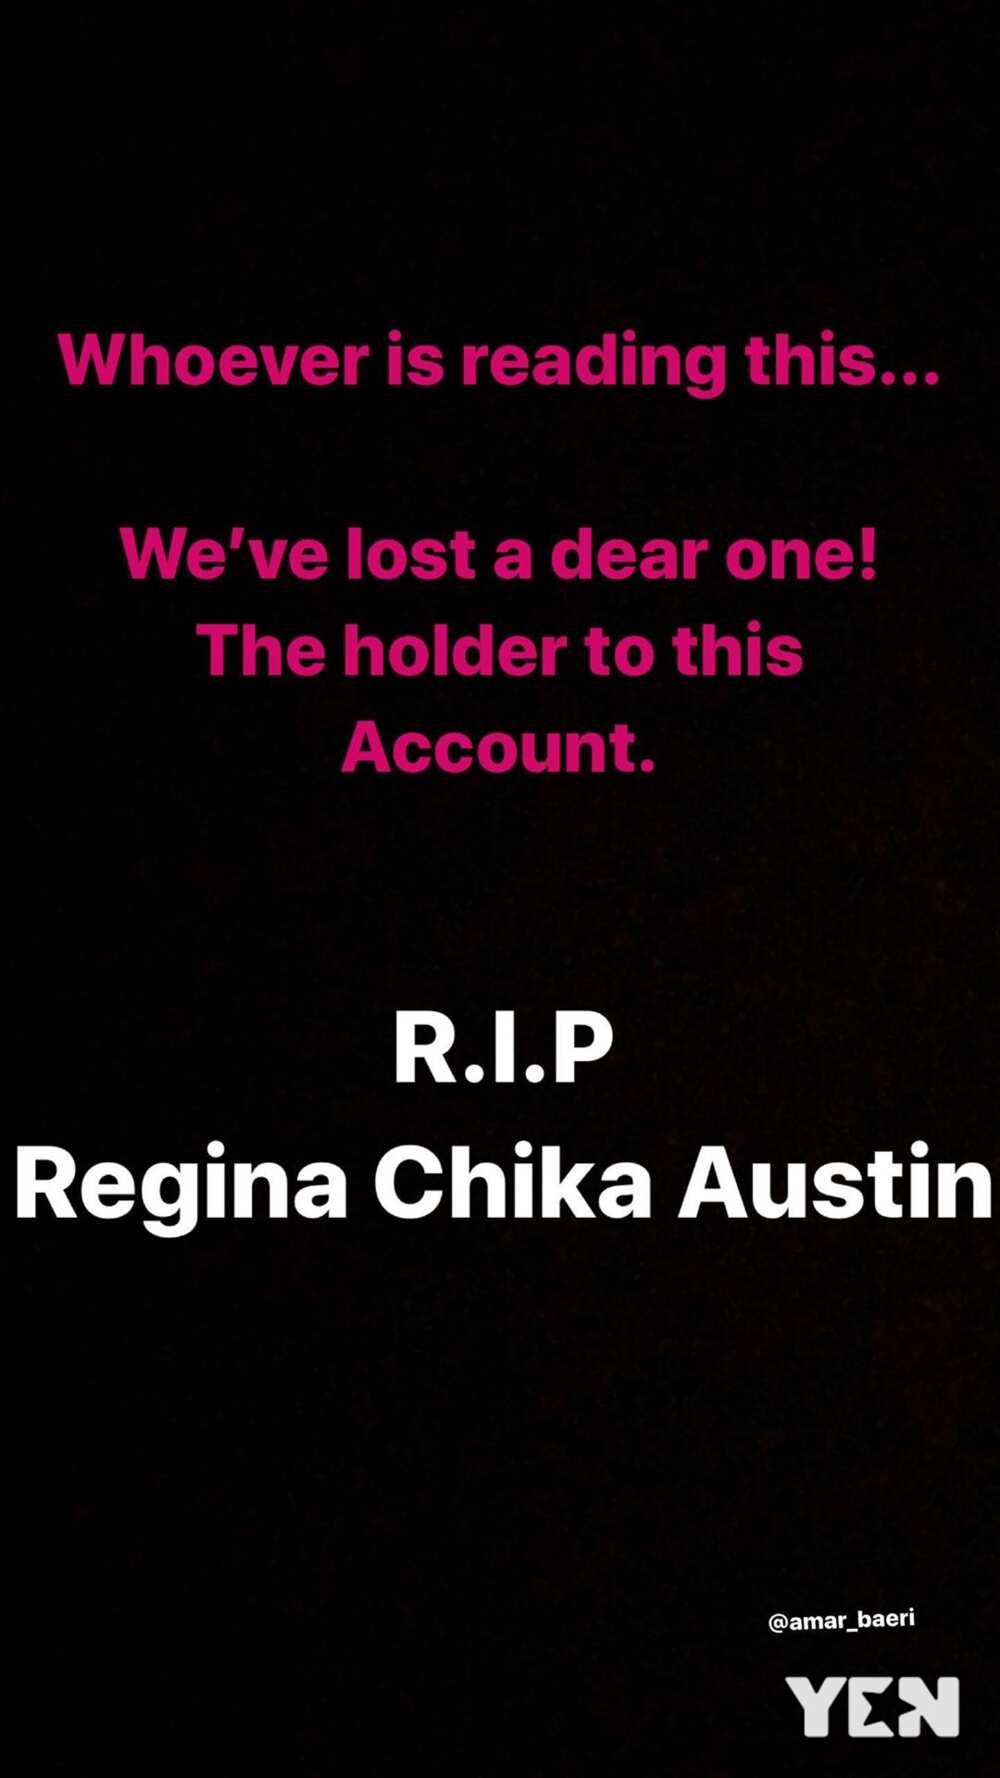 Miss UCC 2018 Regina Chika Austin reported dead